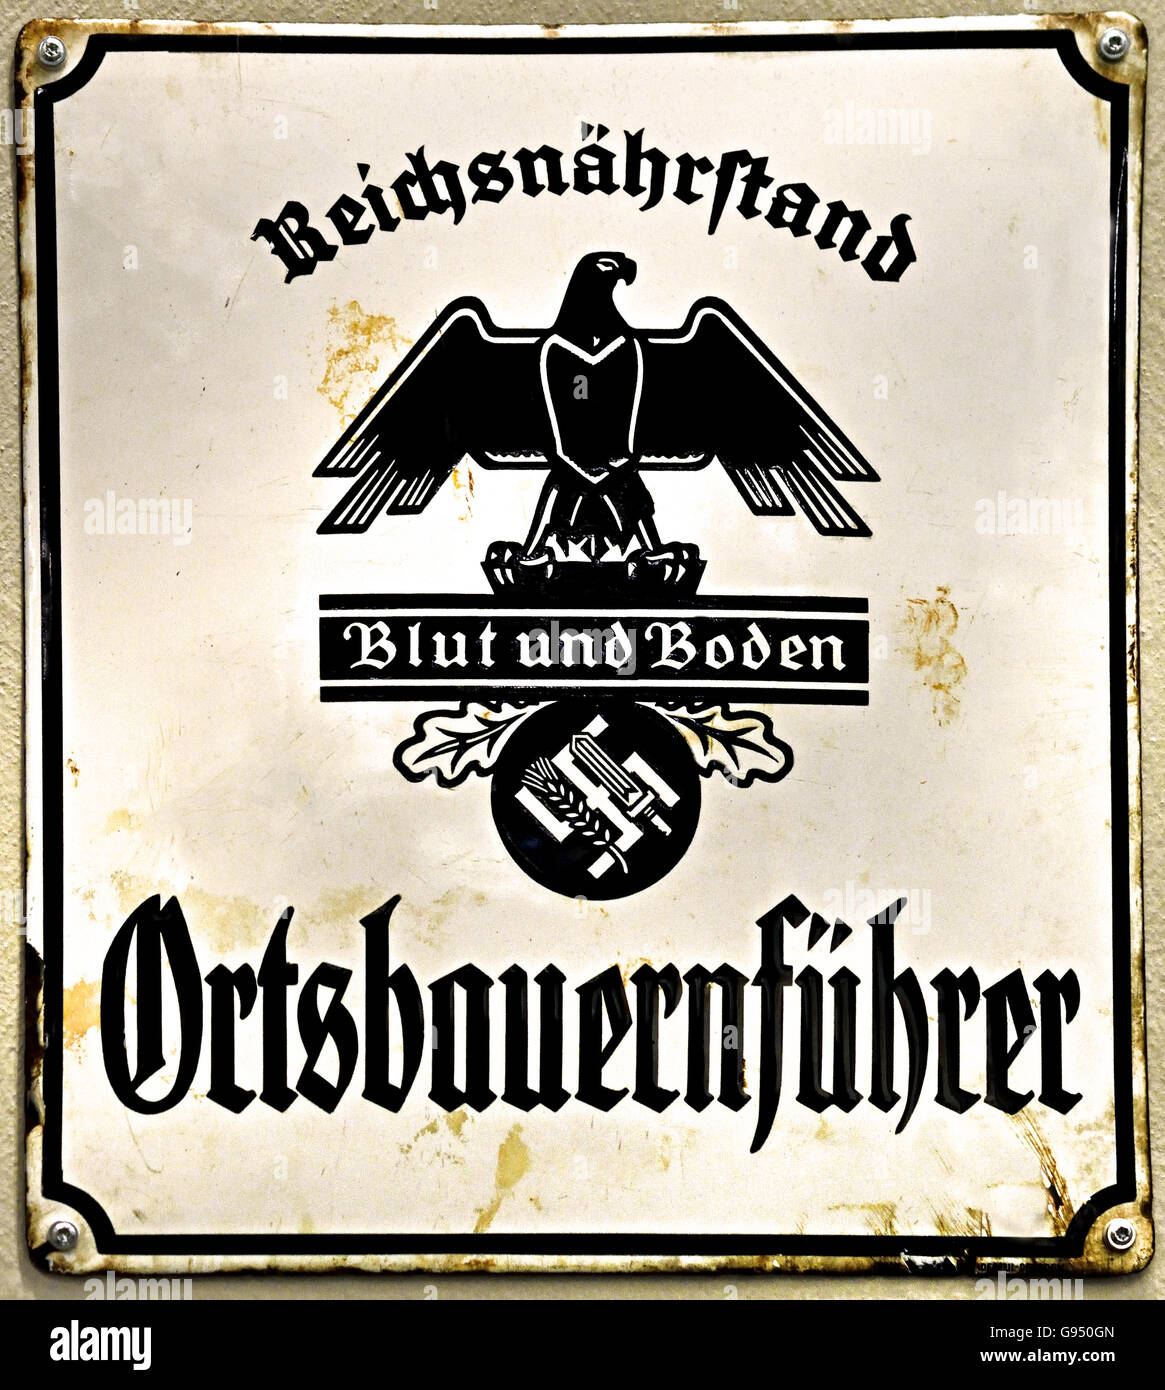 Reichsnährstand Blut und Boden Ortsbauernführer- Reich Food Estate blood and soil Ortsbauernführer Berlin Nazi Germany Stock Photo